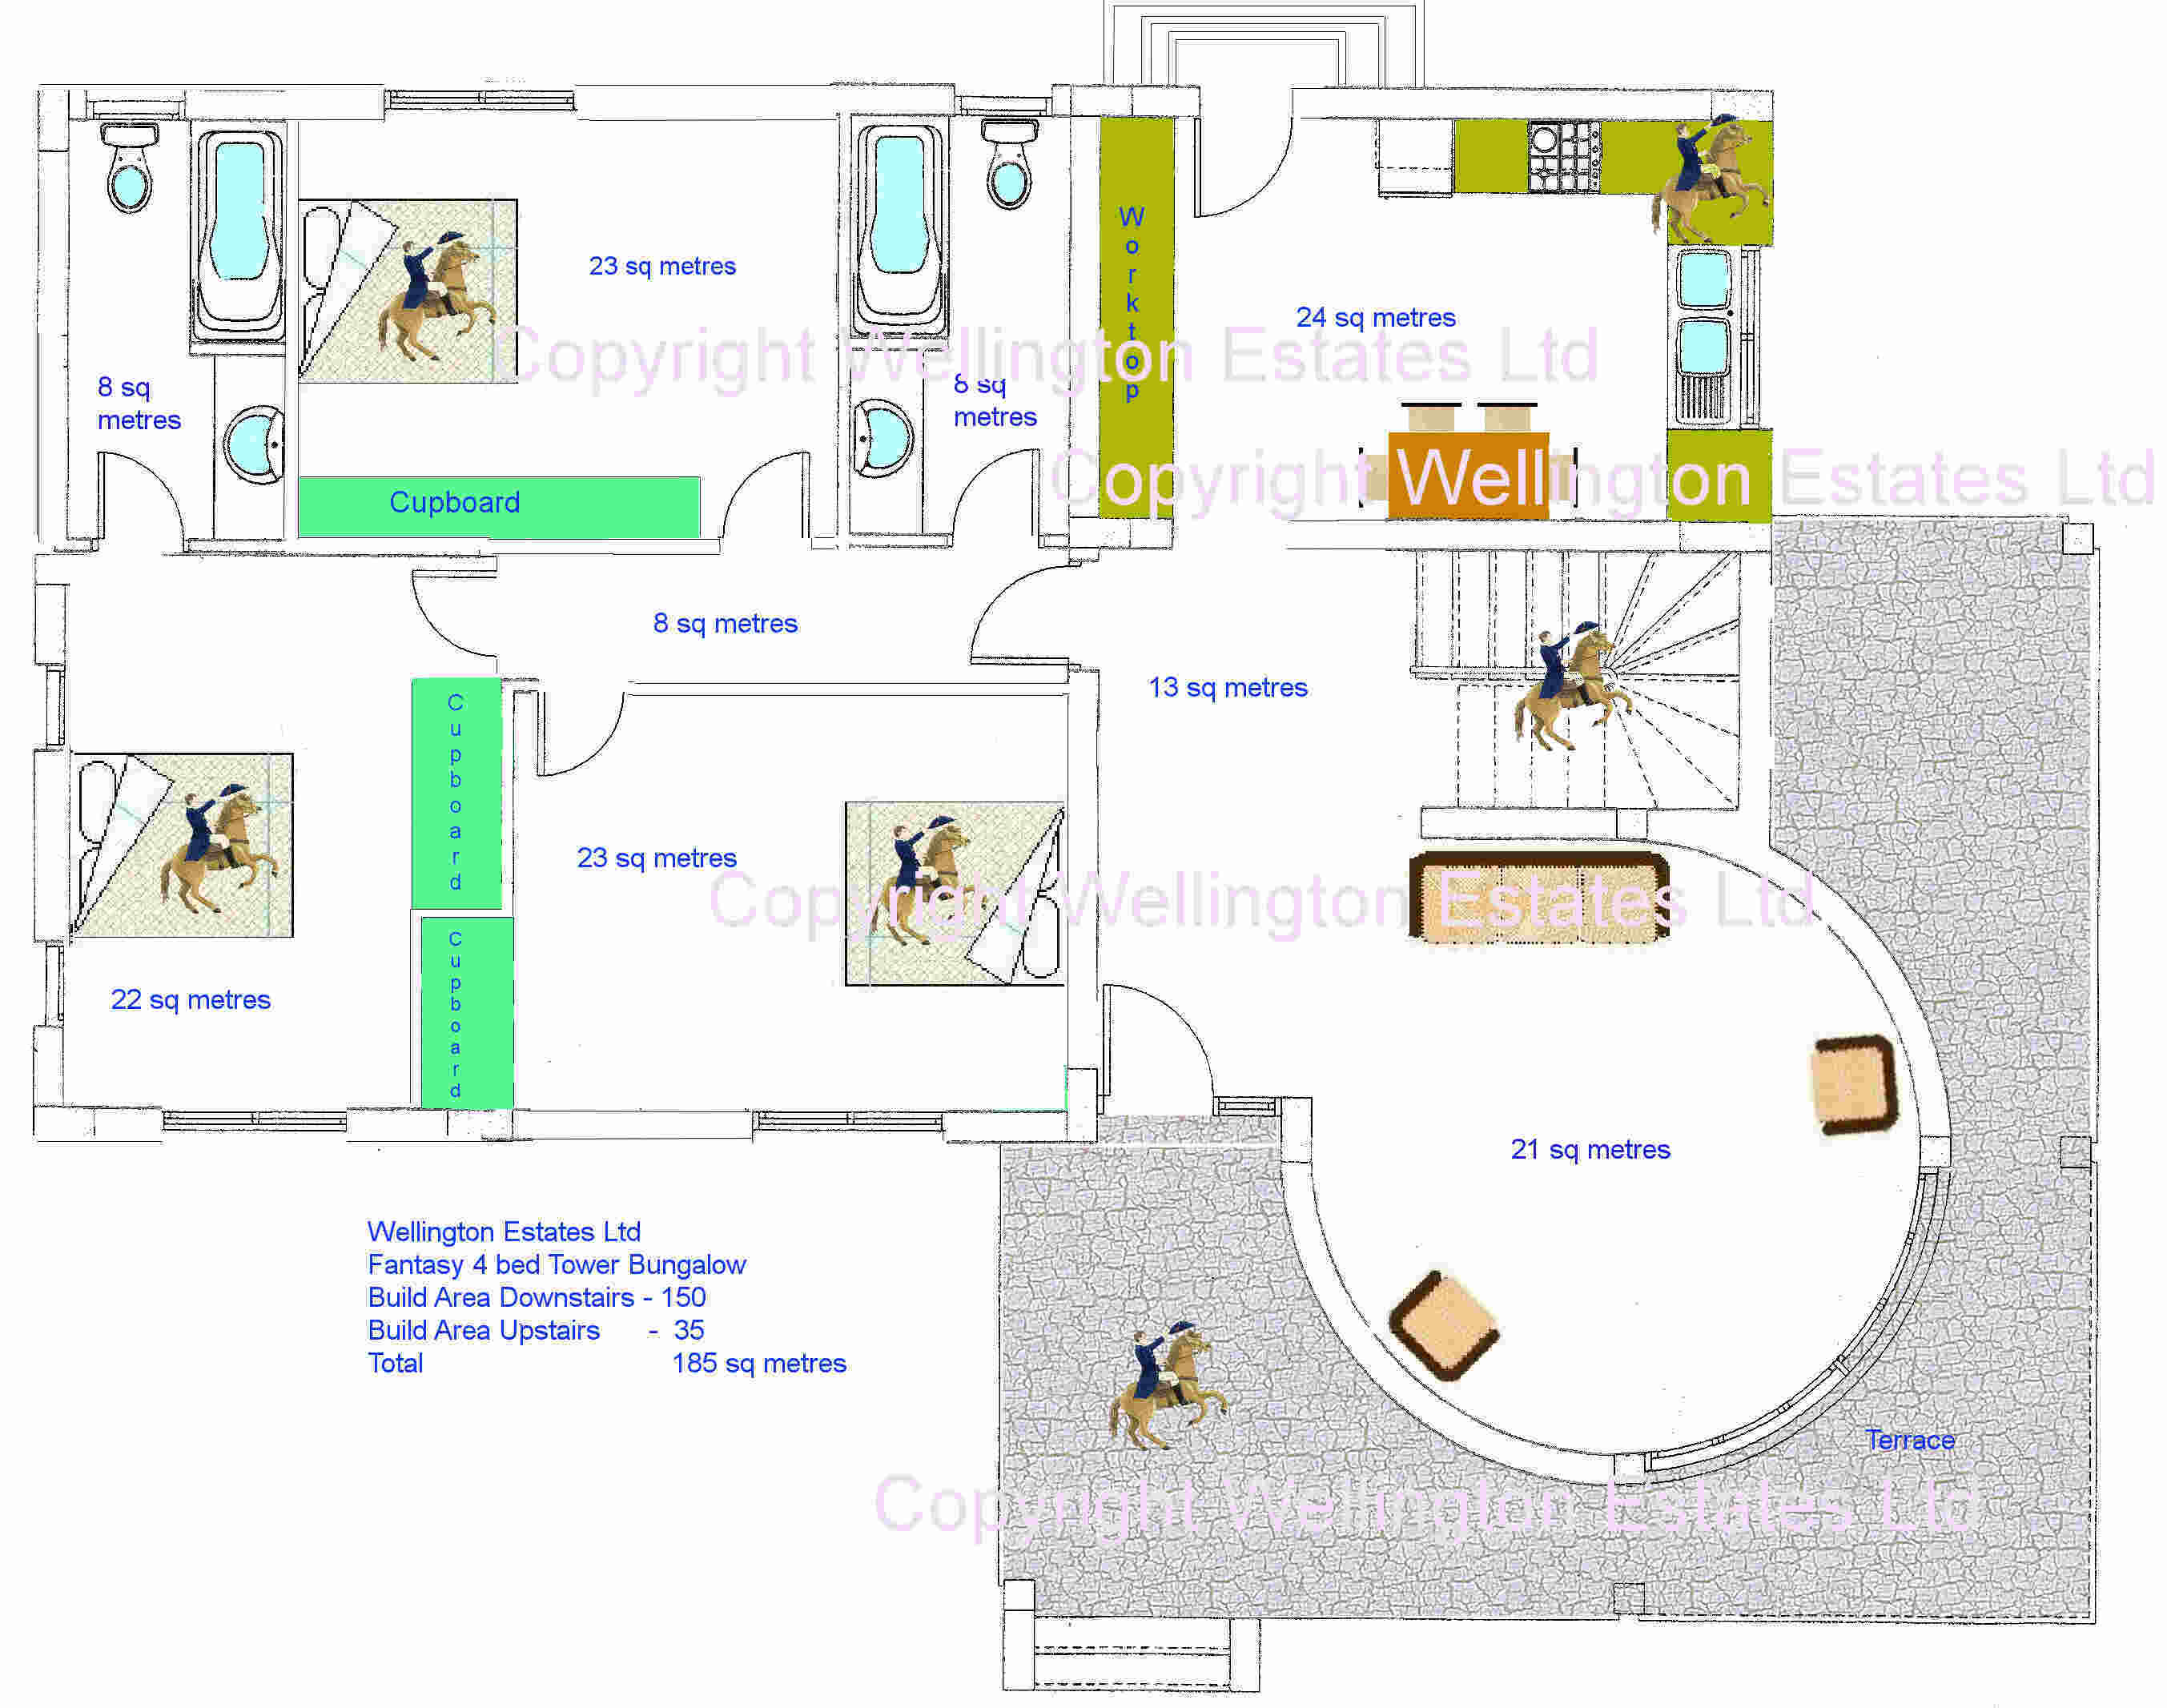 Amazing 4-Bedroom Bungalow Floor Plans 2706 x 2133 · 296 kB · jpeg